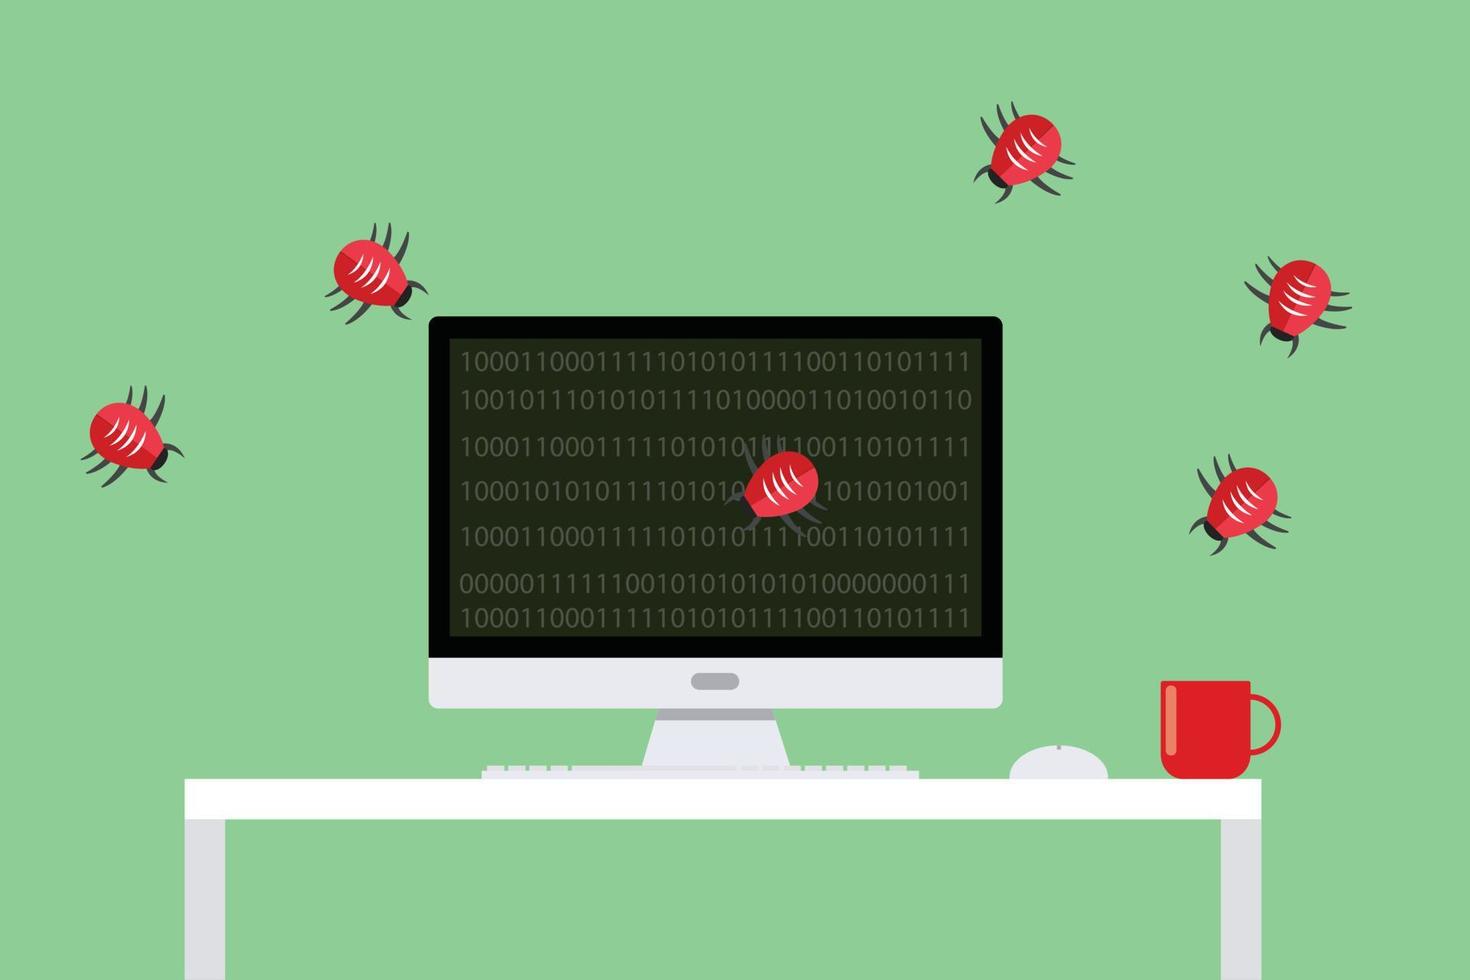 Malware-Virus-Sicherheitsangriff Computerfehler, die flachen Vektor angreifen